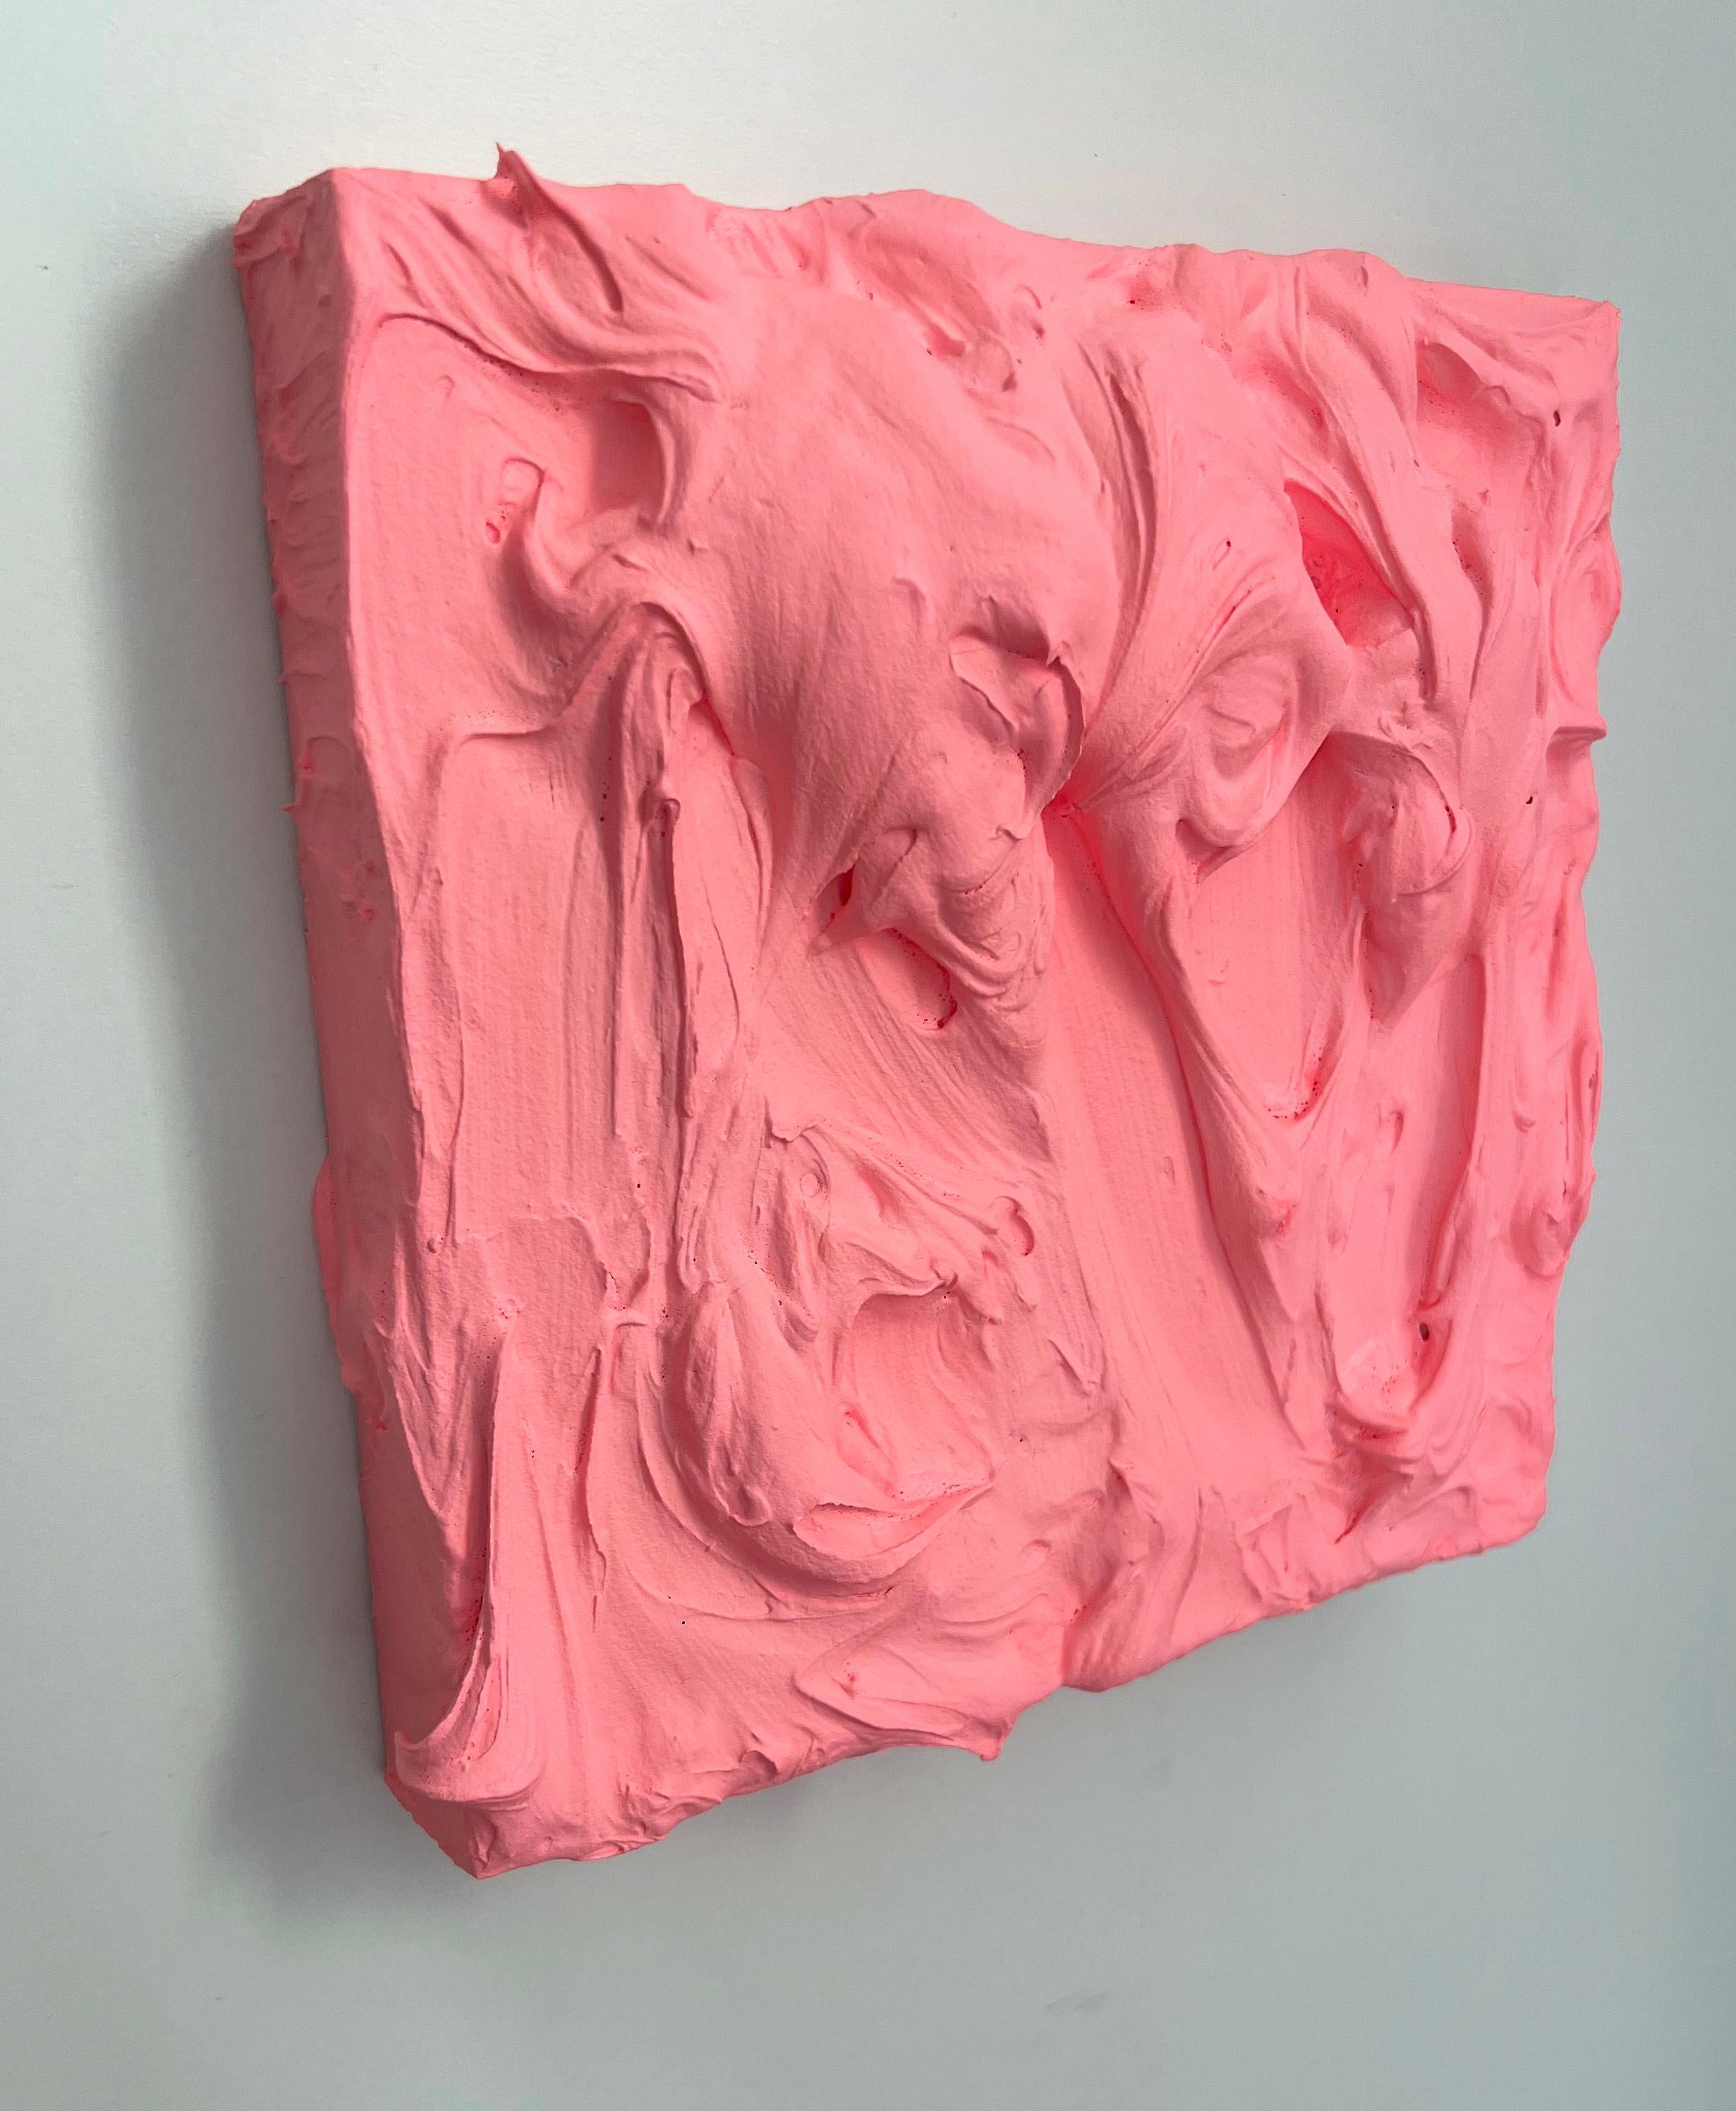  80er Pfirsich Excess (rosafarbenes, mehrfarbiges, monochromes, quadratisches Gemälde im Pop-Design) – Painting von Chloe Hedden